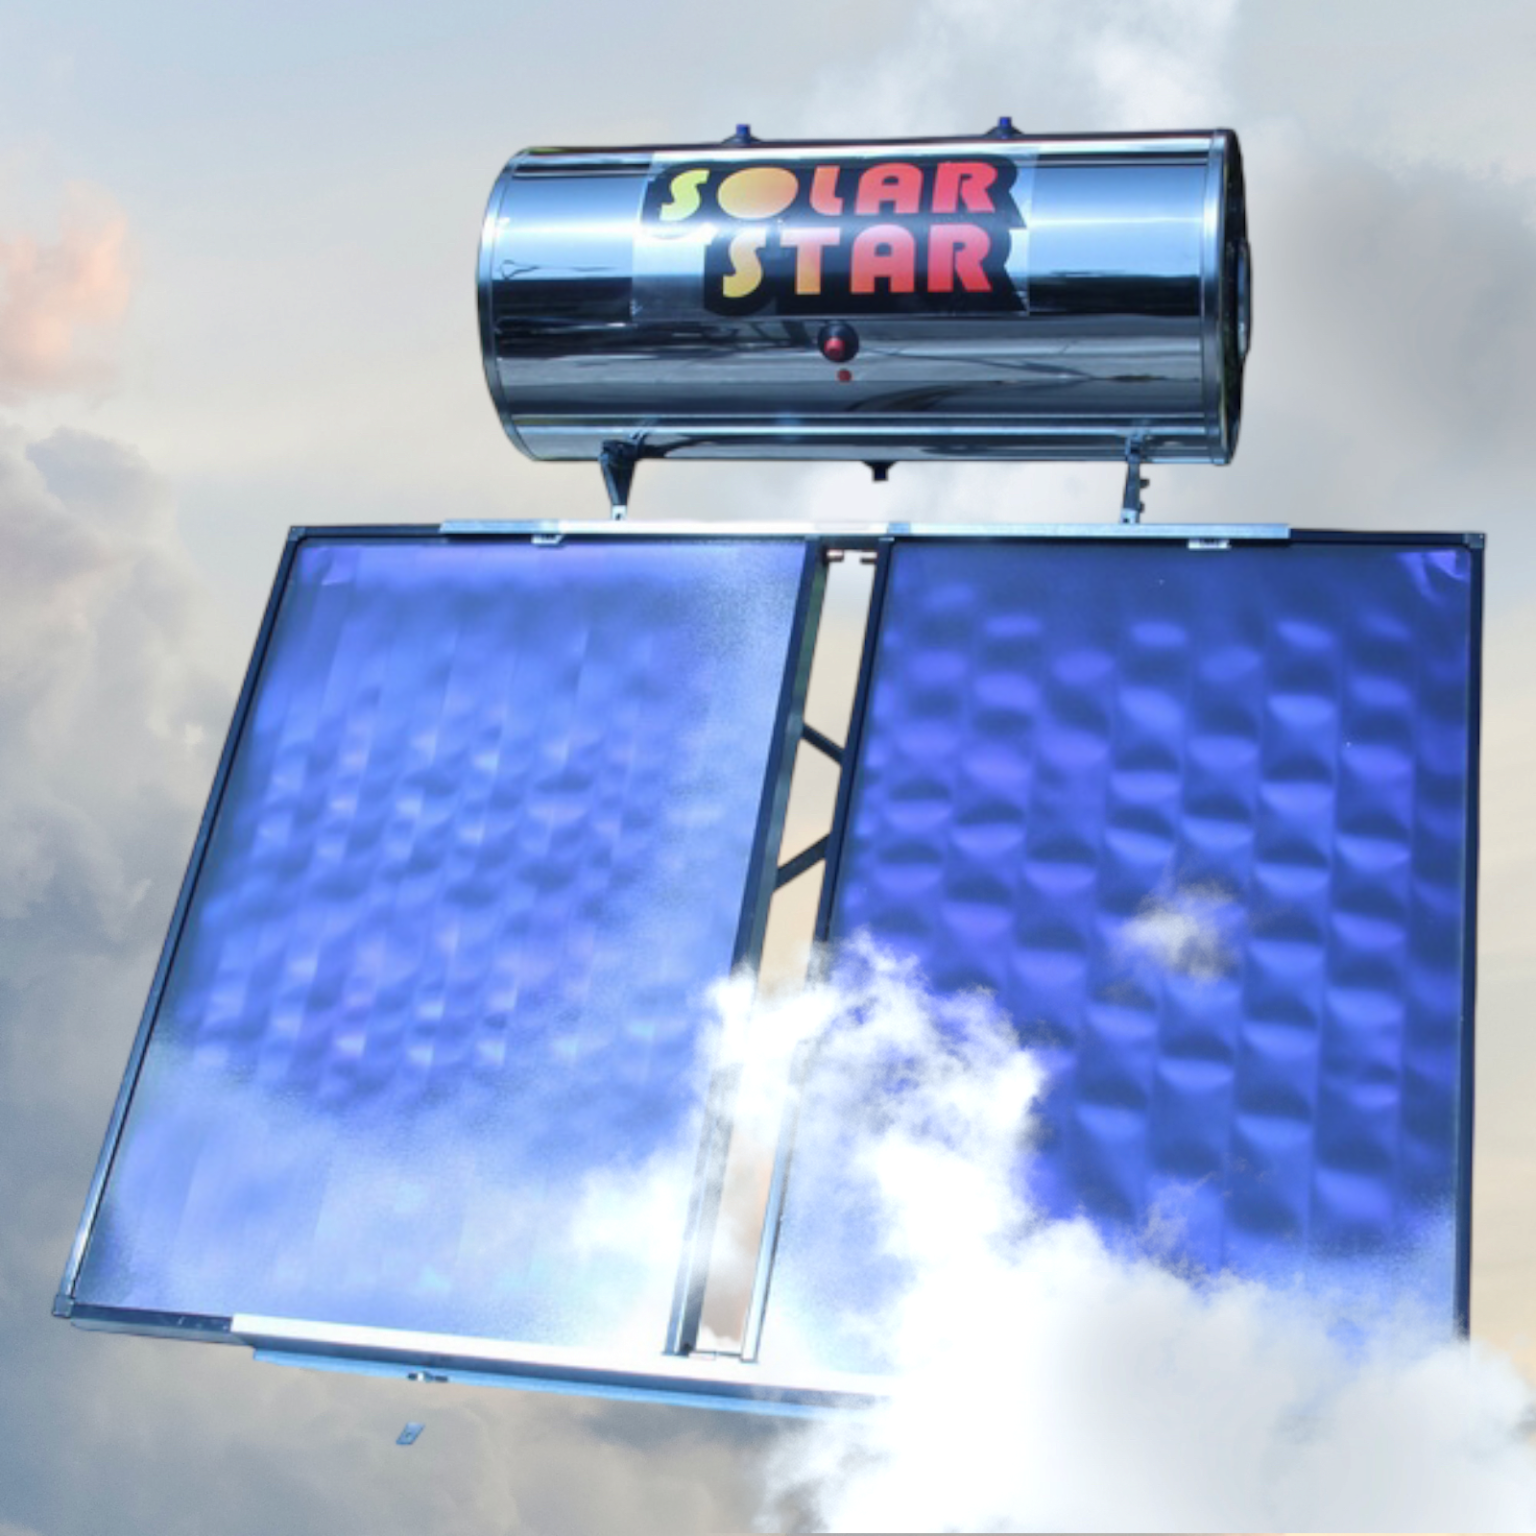 Ηλιακός θερμοσίφωνας Solar star 300lt/4,74tm² Glass Επιλεκτικός -Διπλής Ενεργείας-Ως 3 Άτοκες Δόσεις